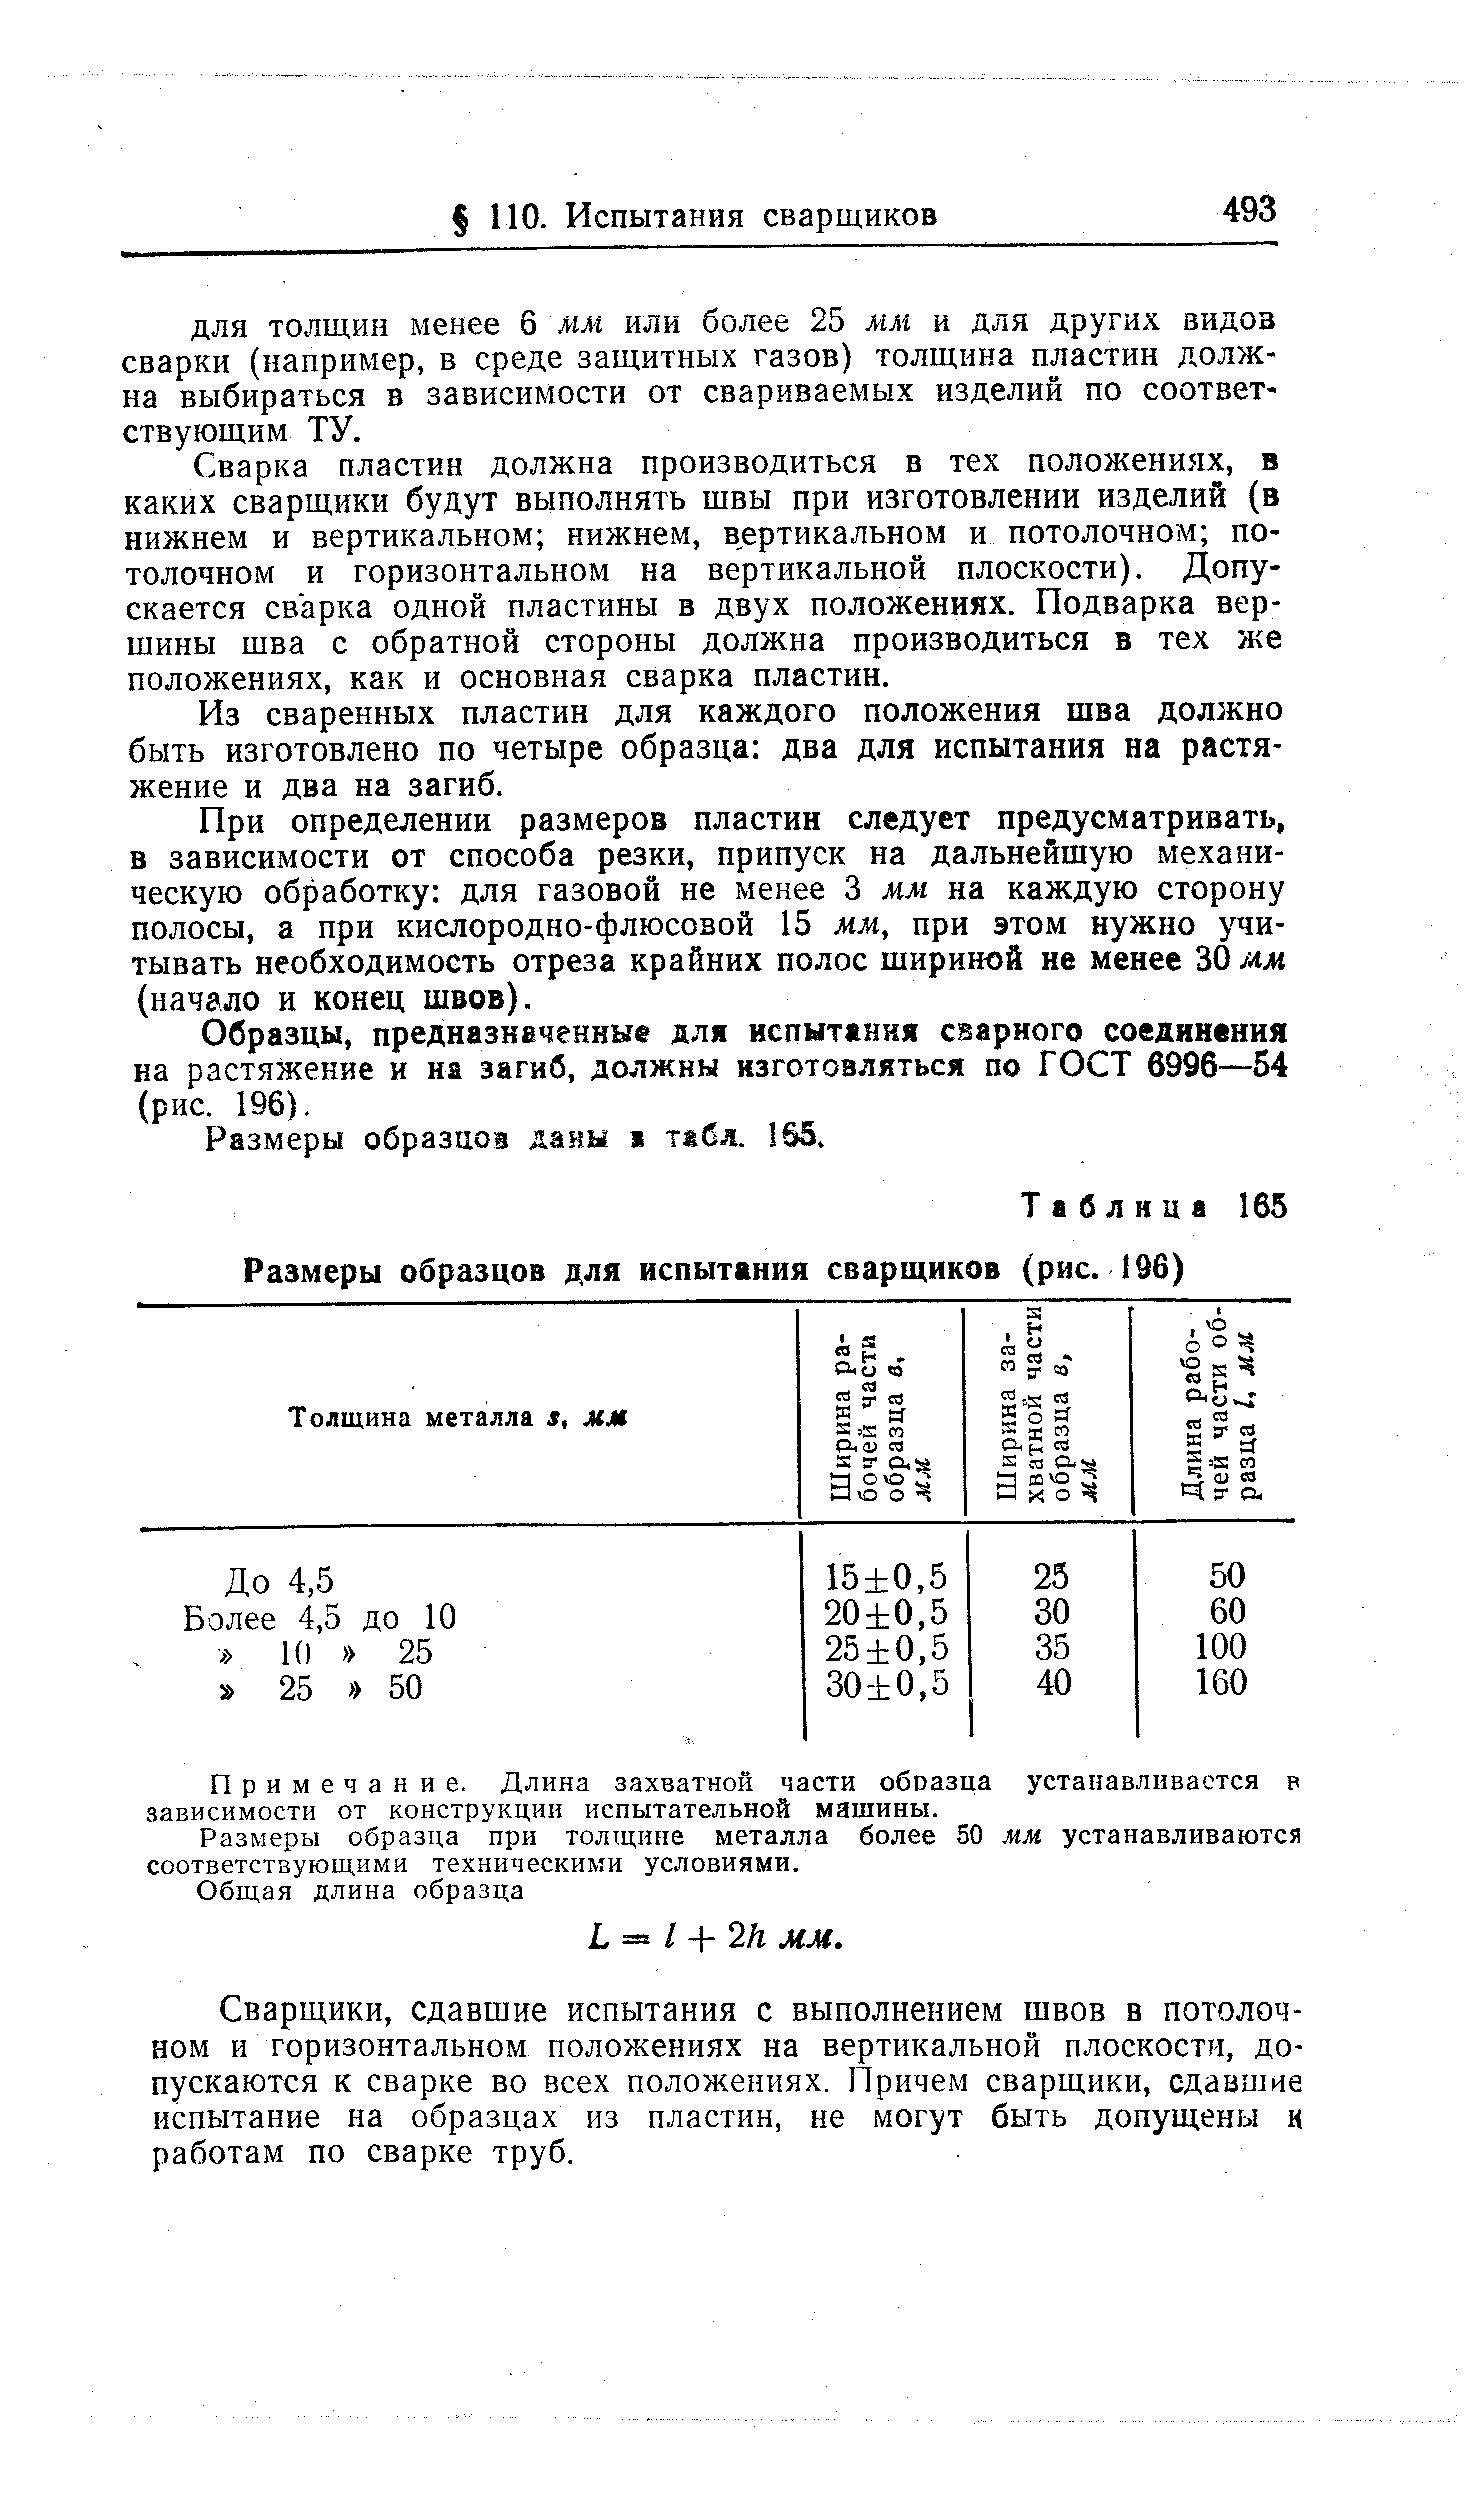 Таблица 165 Размеры образцов для испытания сварщиков (рис. 196)
